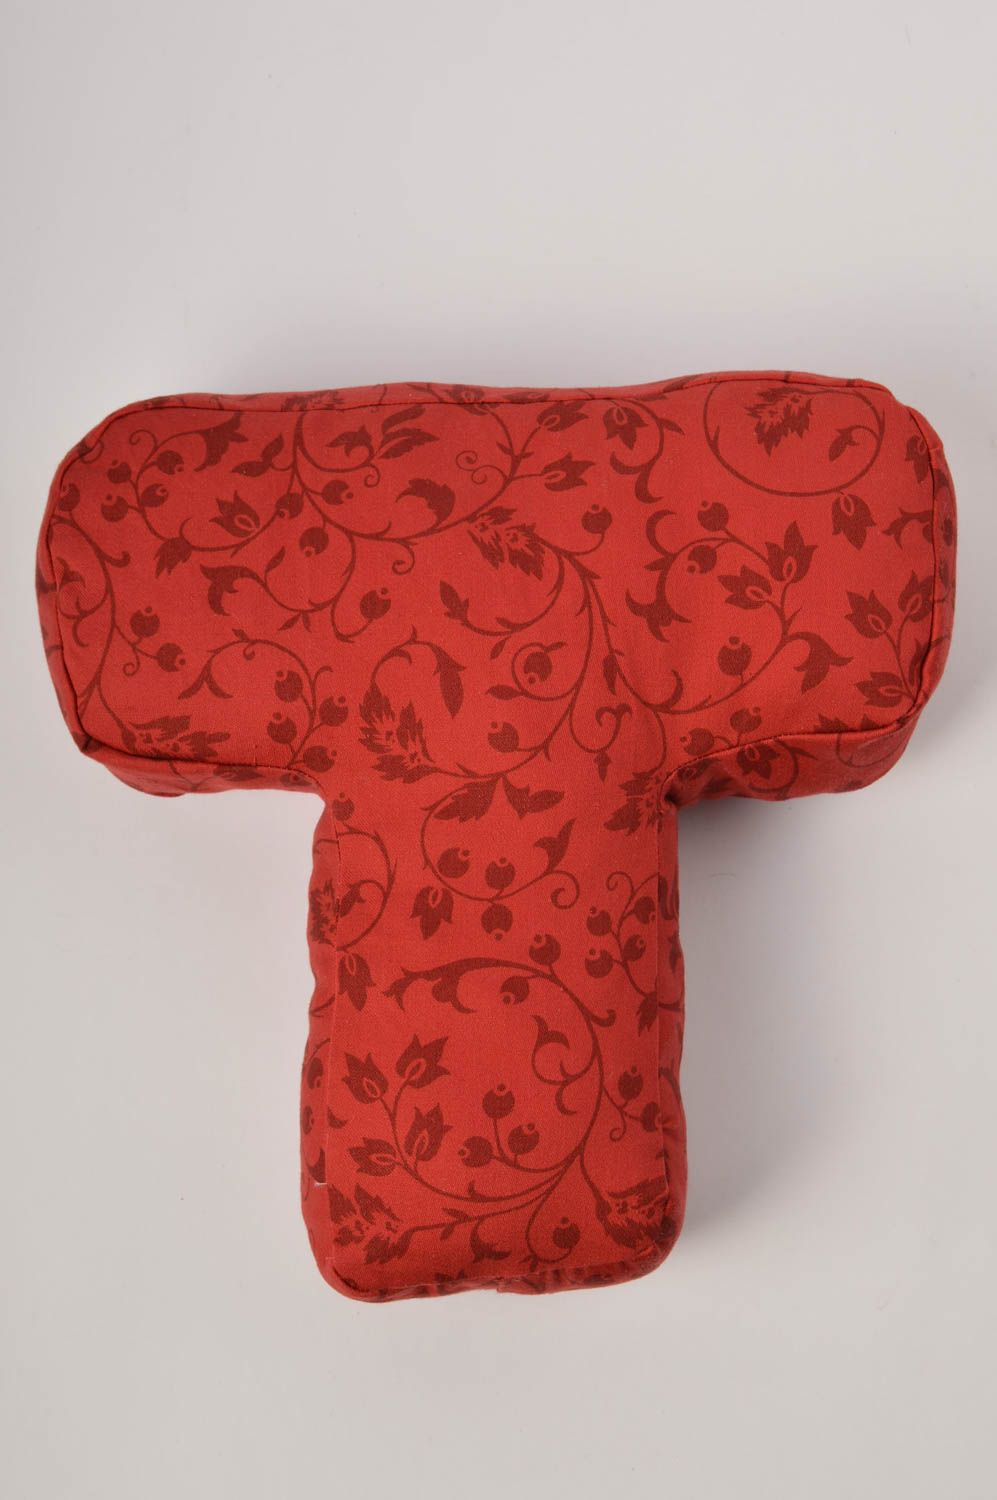 Декоративная подушка ручной работы подушка-буква из жаккарда мягкая буква Т фото 3